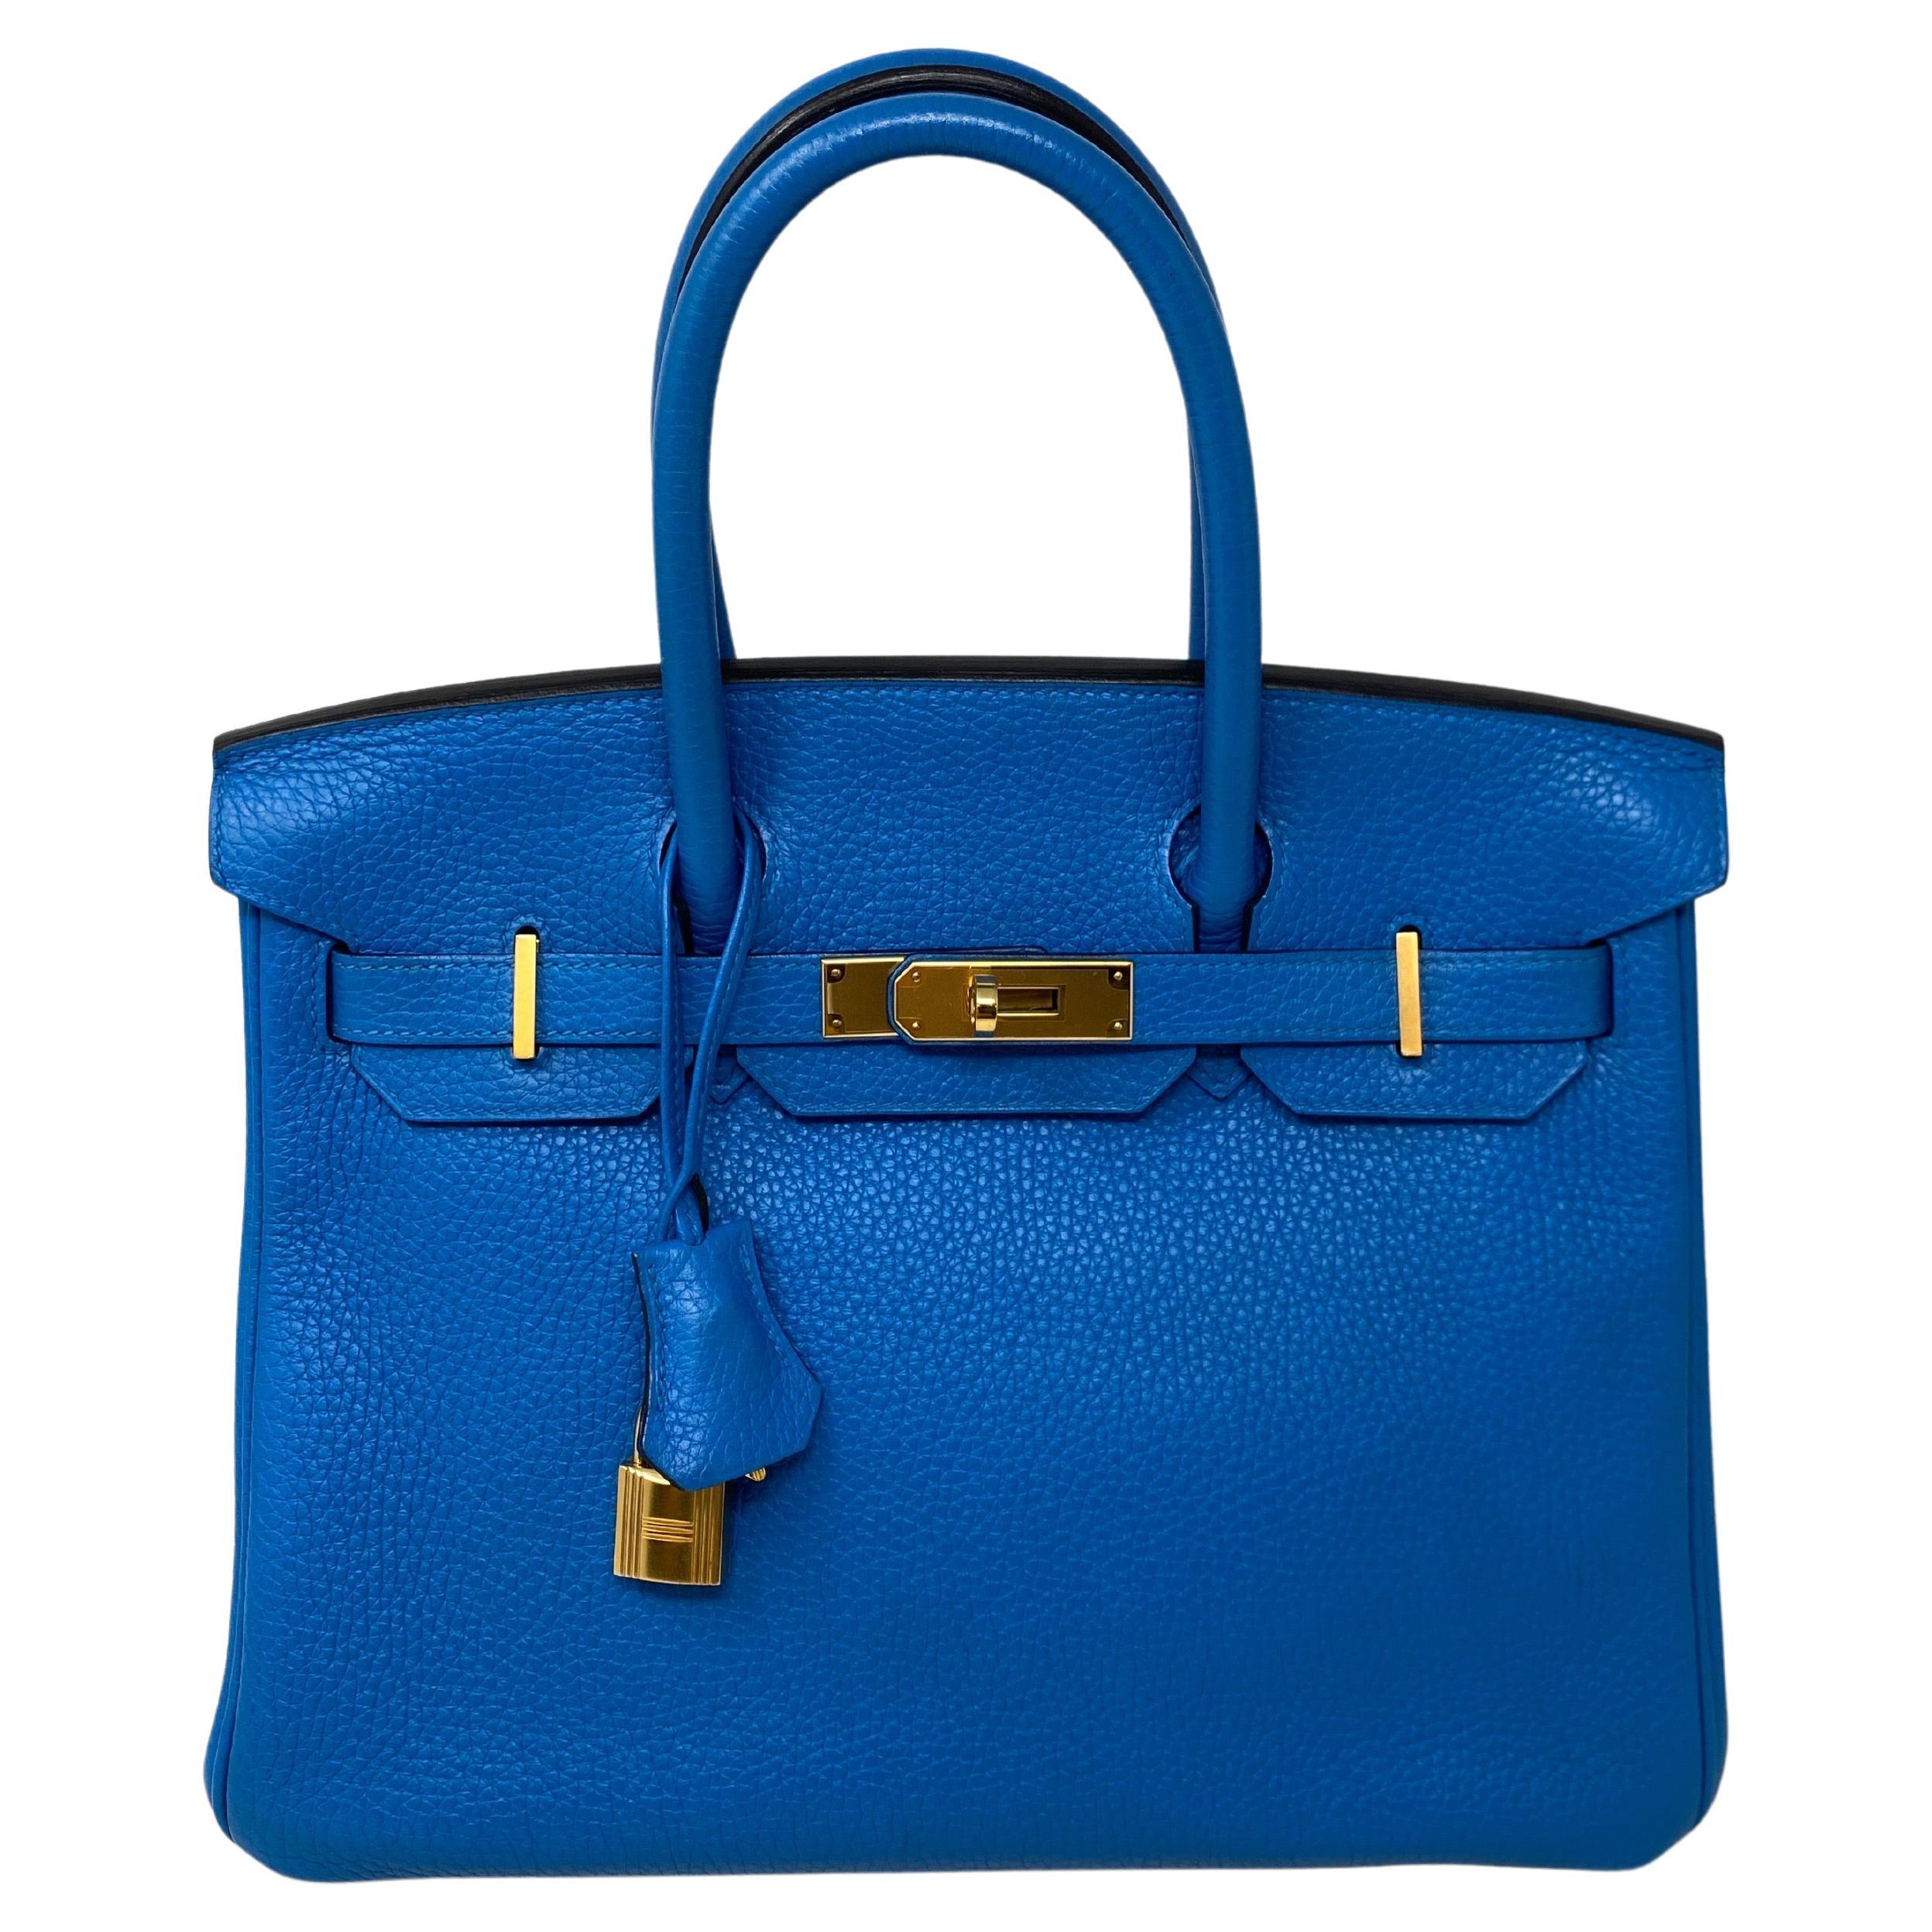 Hermes Blue Zanzibar Birkin 30 Bag 